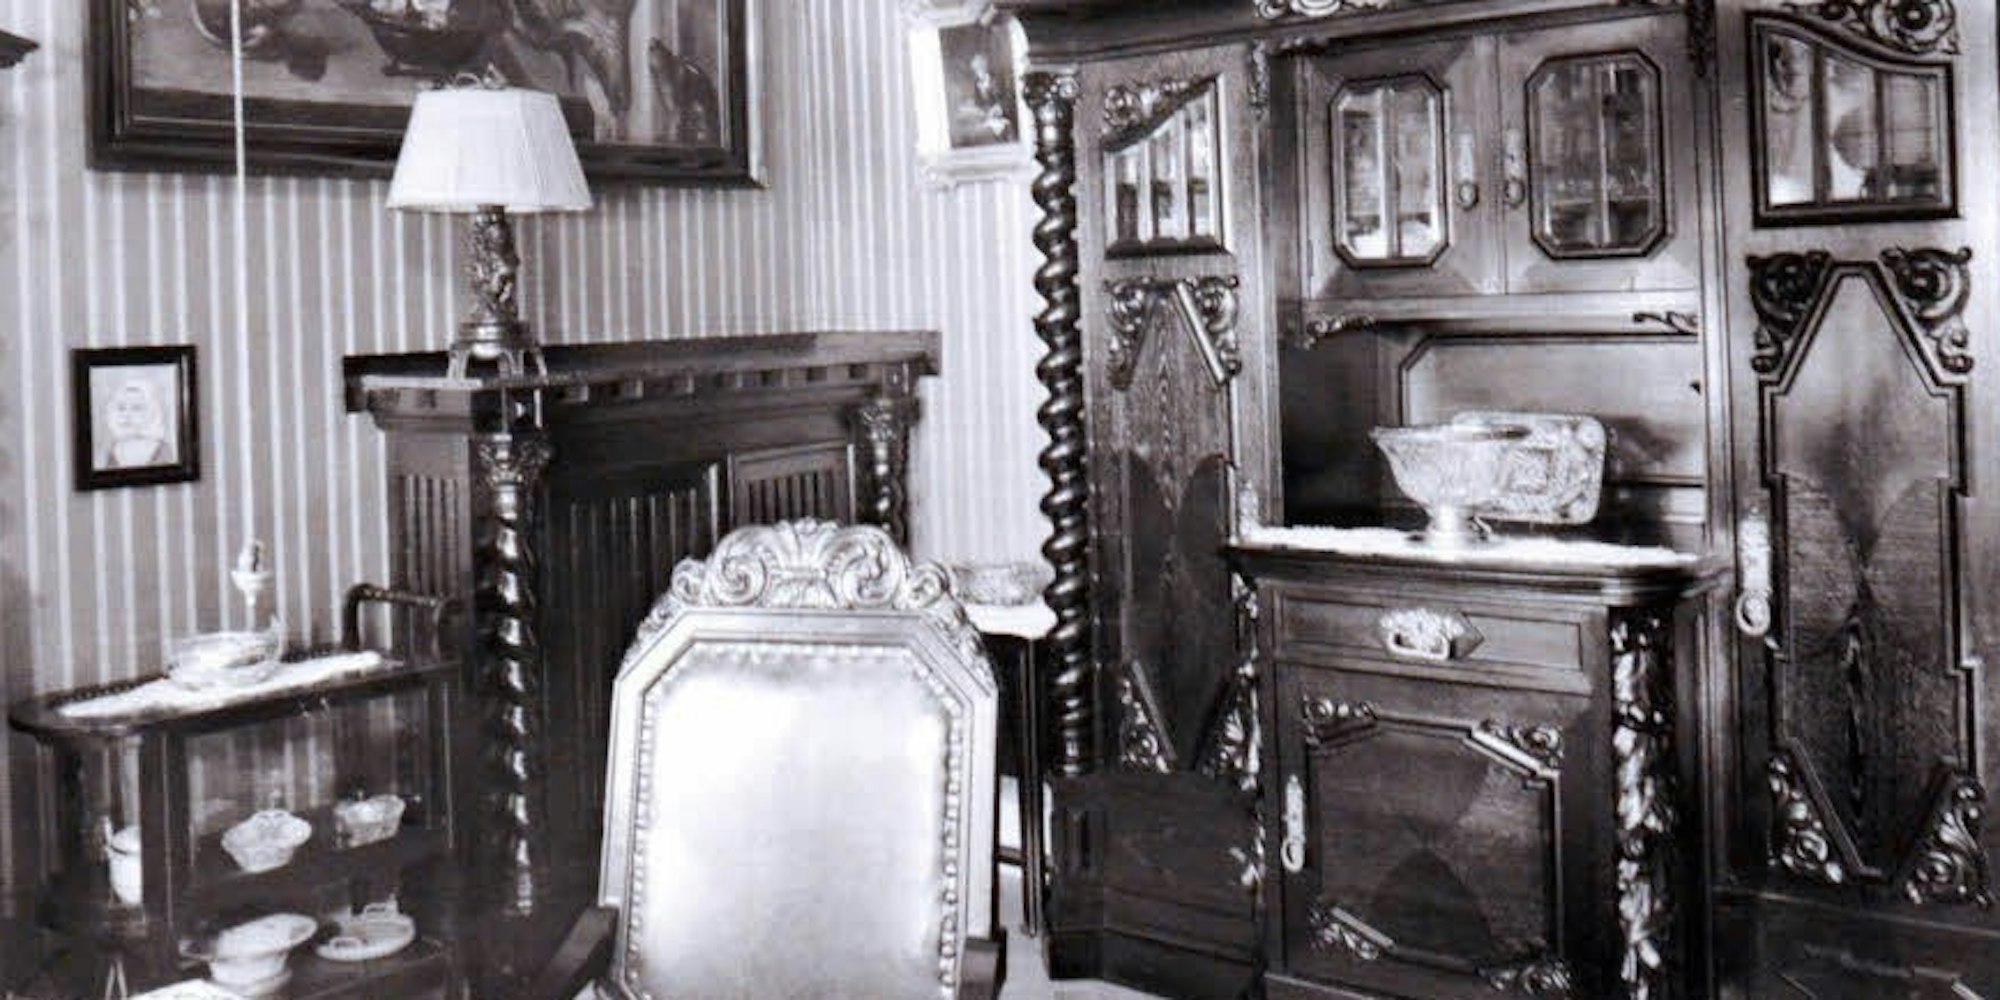 Vornehm residierte der Gold- und Uhrenhändler Leopold Dahmen im Haus neben der Gestapo-Zentrale.